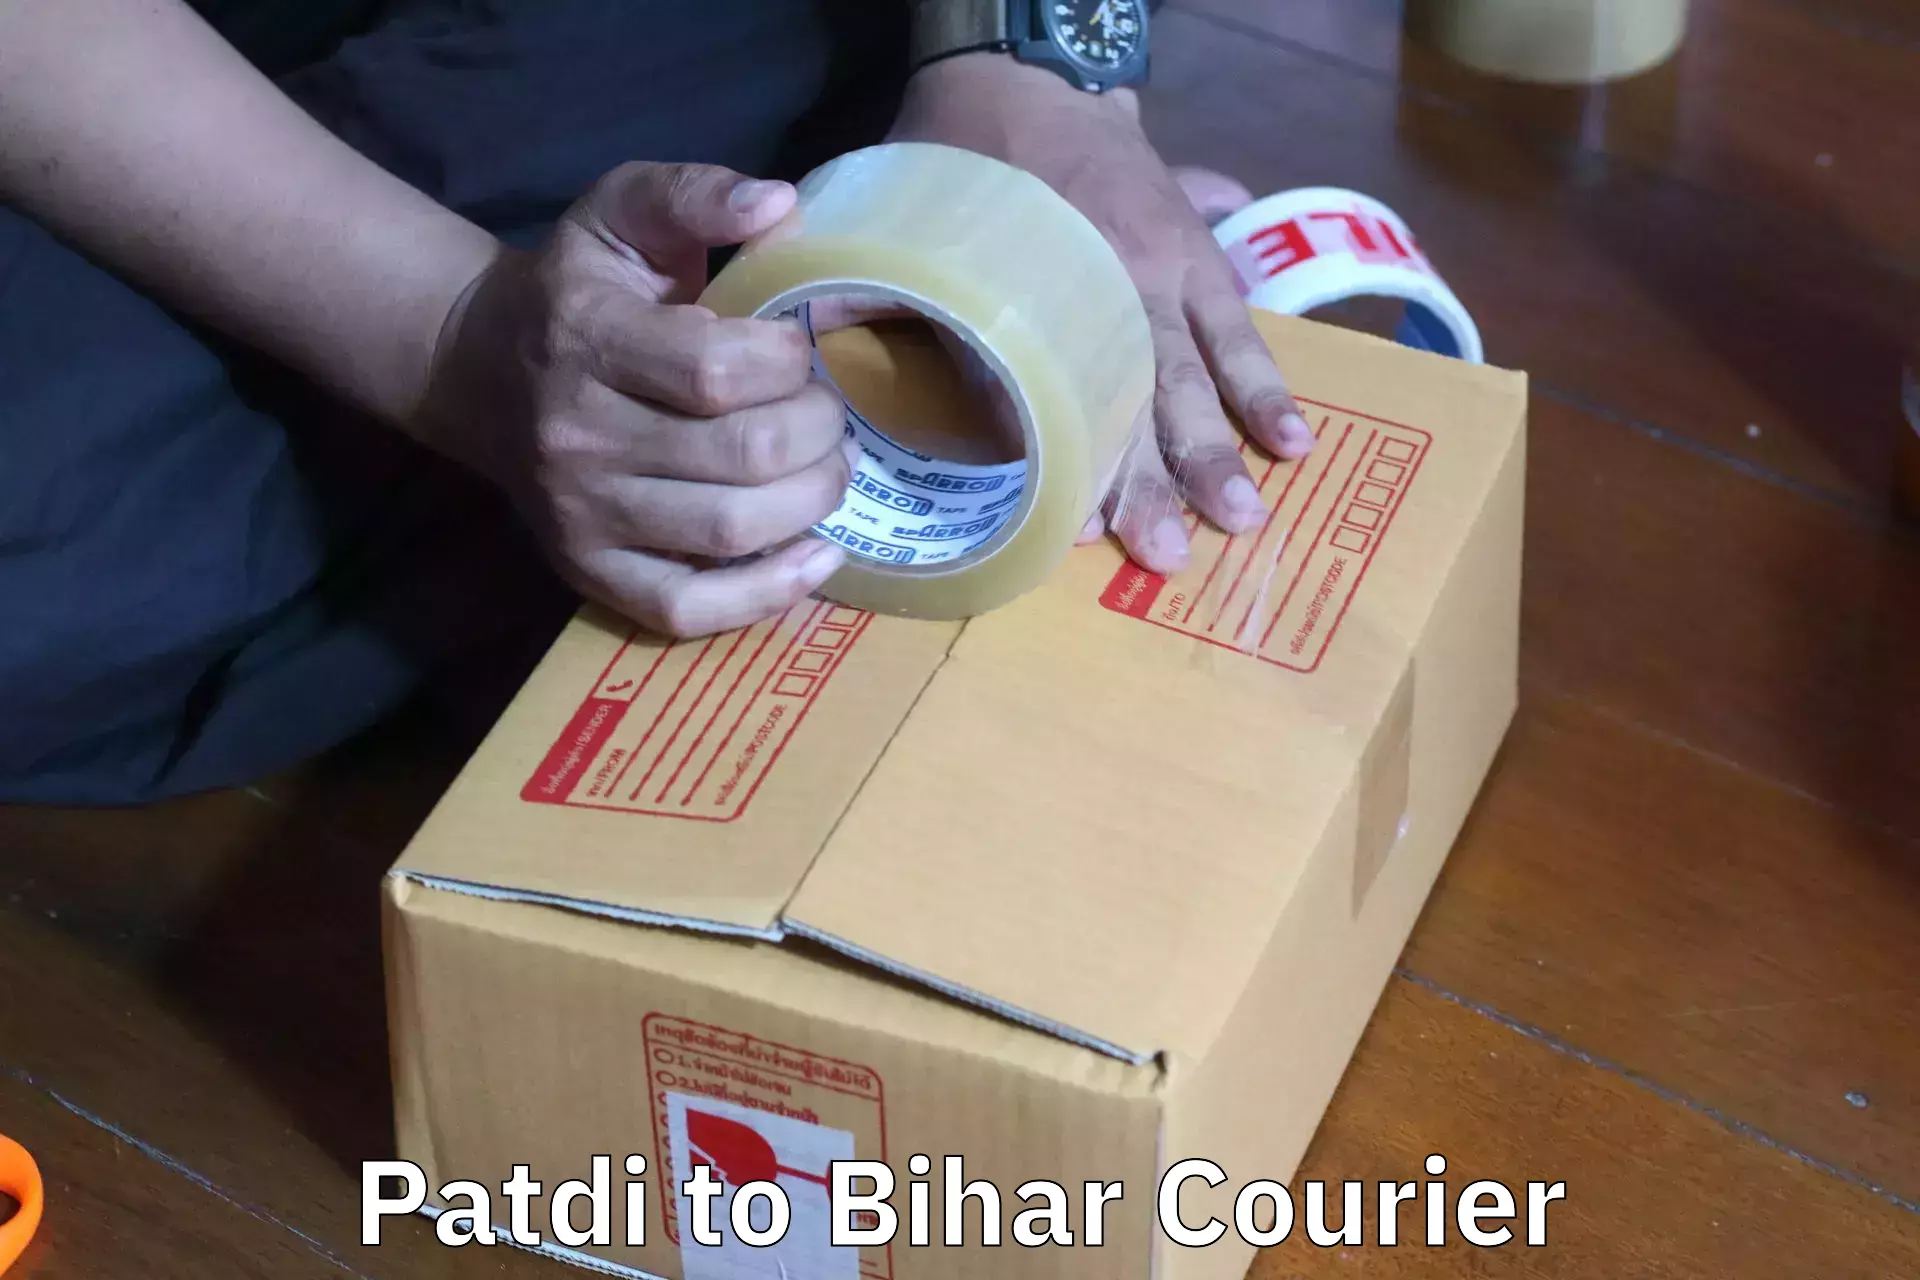 Skilled furniture movers Patdi to Bihar